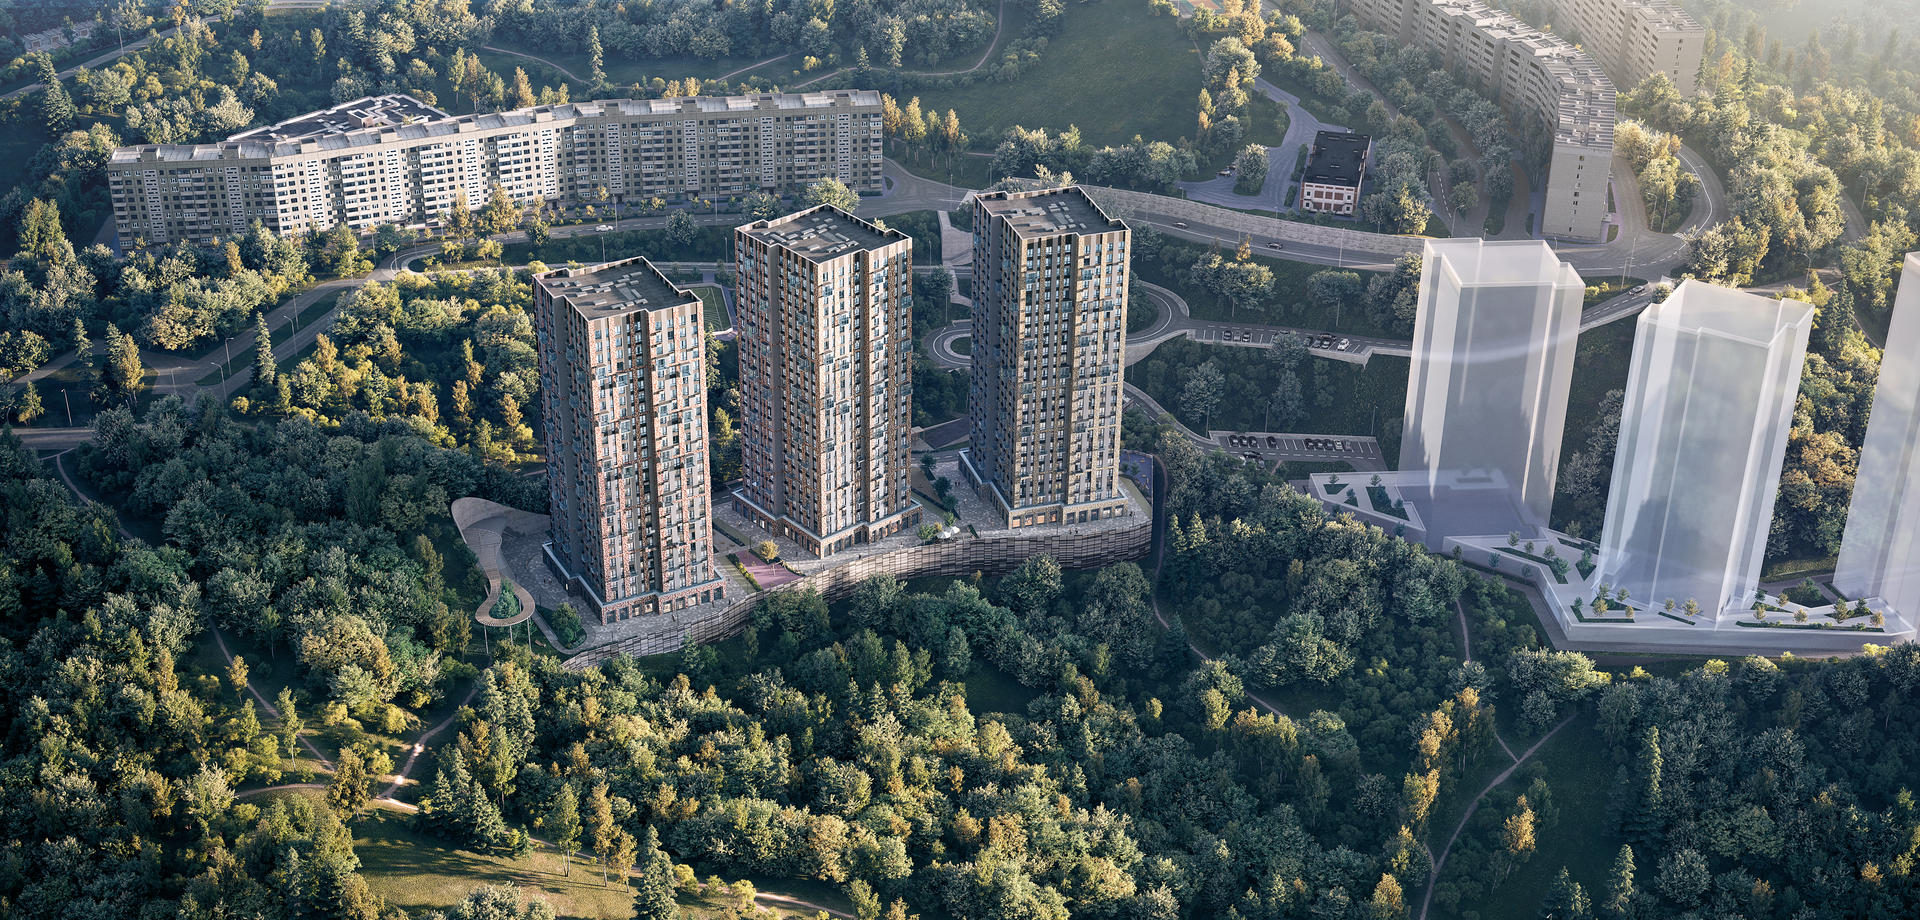 Продам квартиру в Владивостоке по адресу Сабанеева ул, 11, площадь 664 квм Недвижимость Приморский край (Россия)  Квартира расположена на 20 этаже 25 этажного монолитно-кирпичного дома (Корпус 1